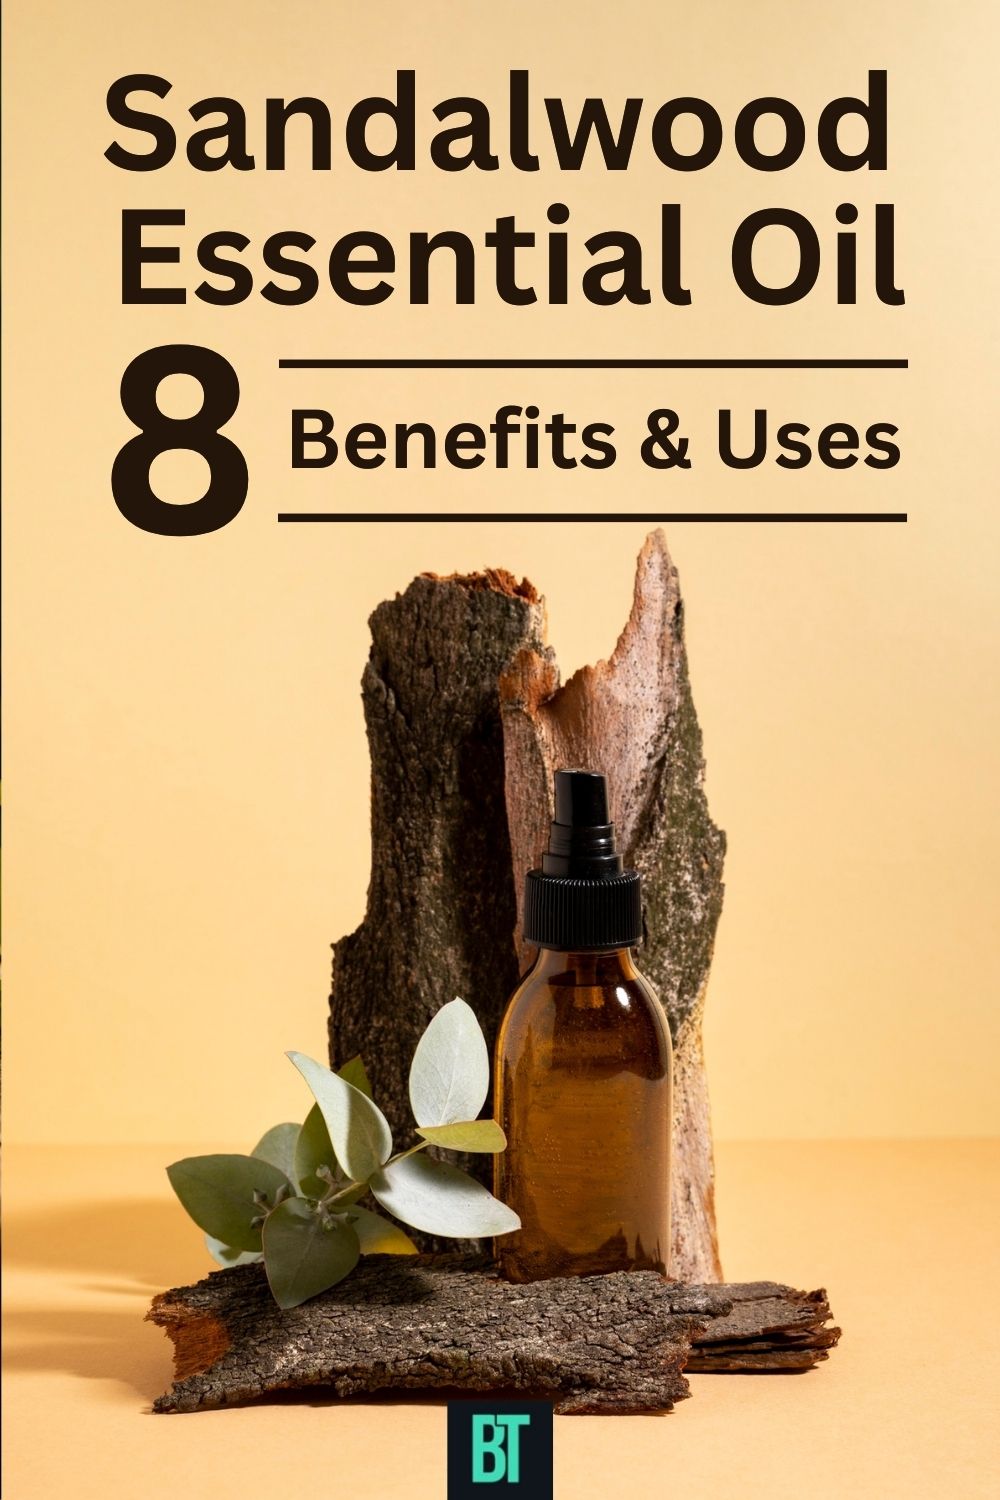 Sandalwood Essential Oil Benefits & Uses